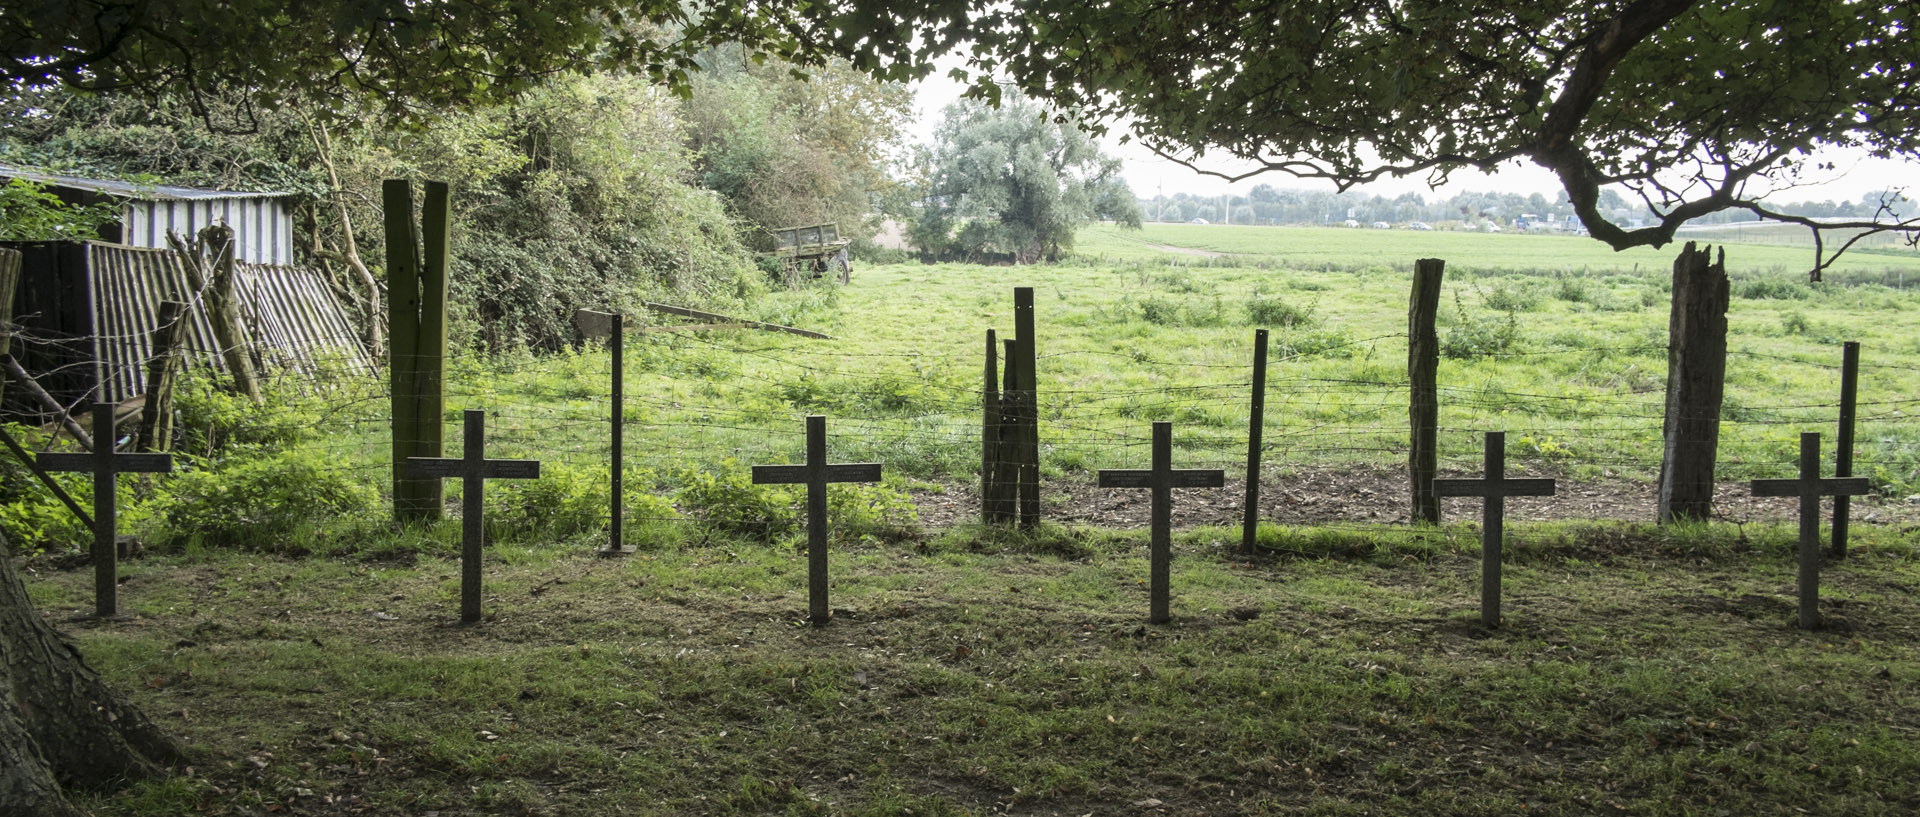 Jeudi 11 septembre 2014, 16:26, cimetière militaire allemand, Wambrechies